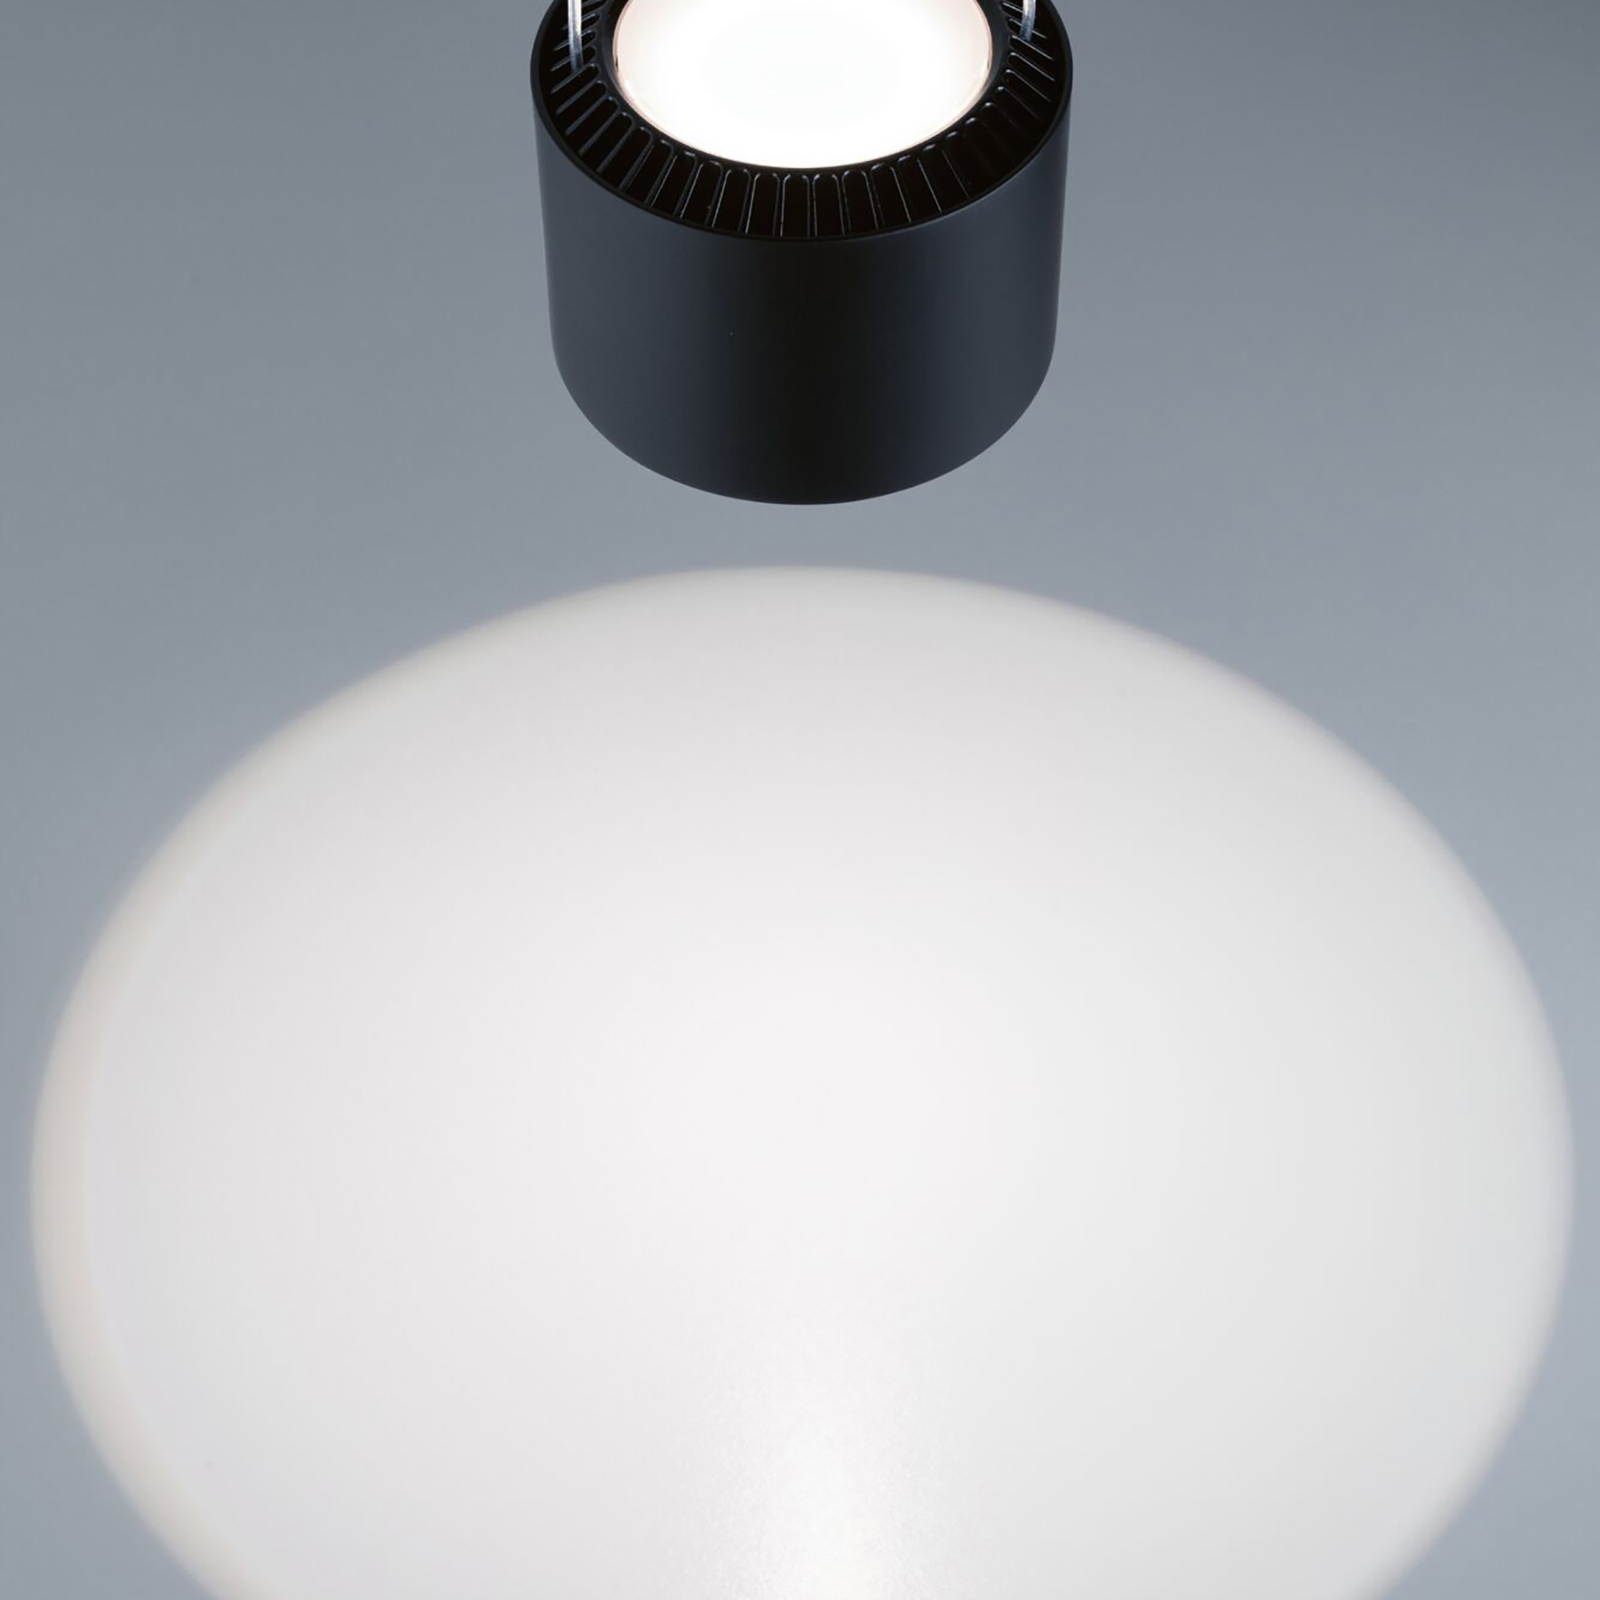 Paulmann URail Aldan LED-pendel 4 000 K svart